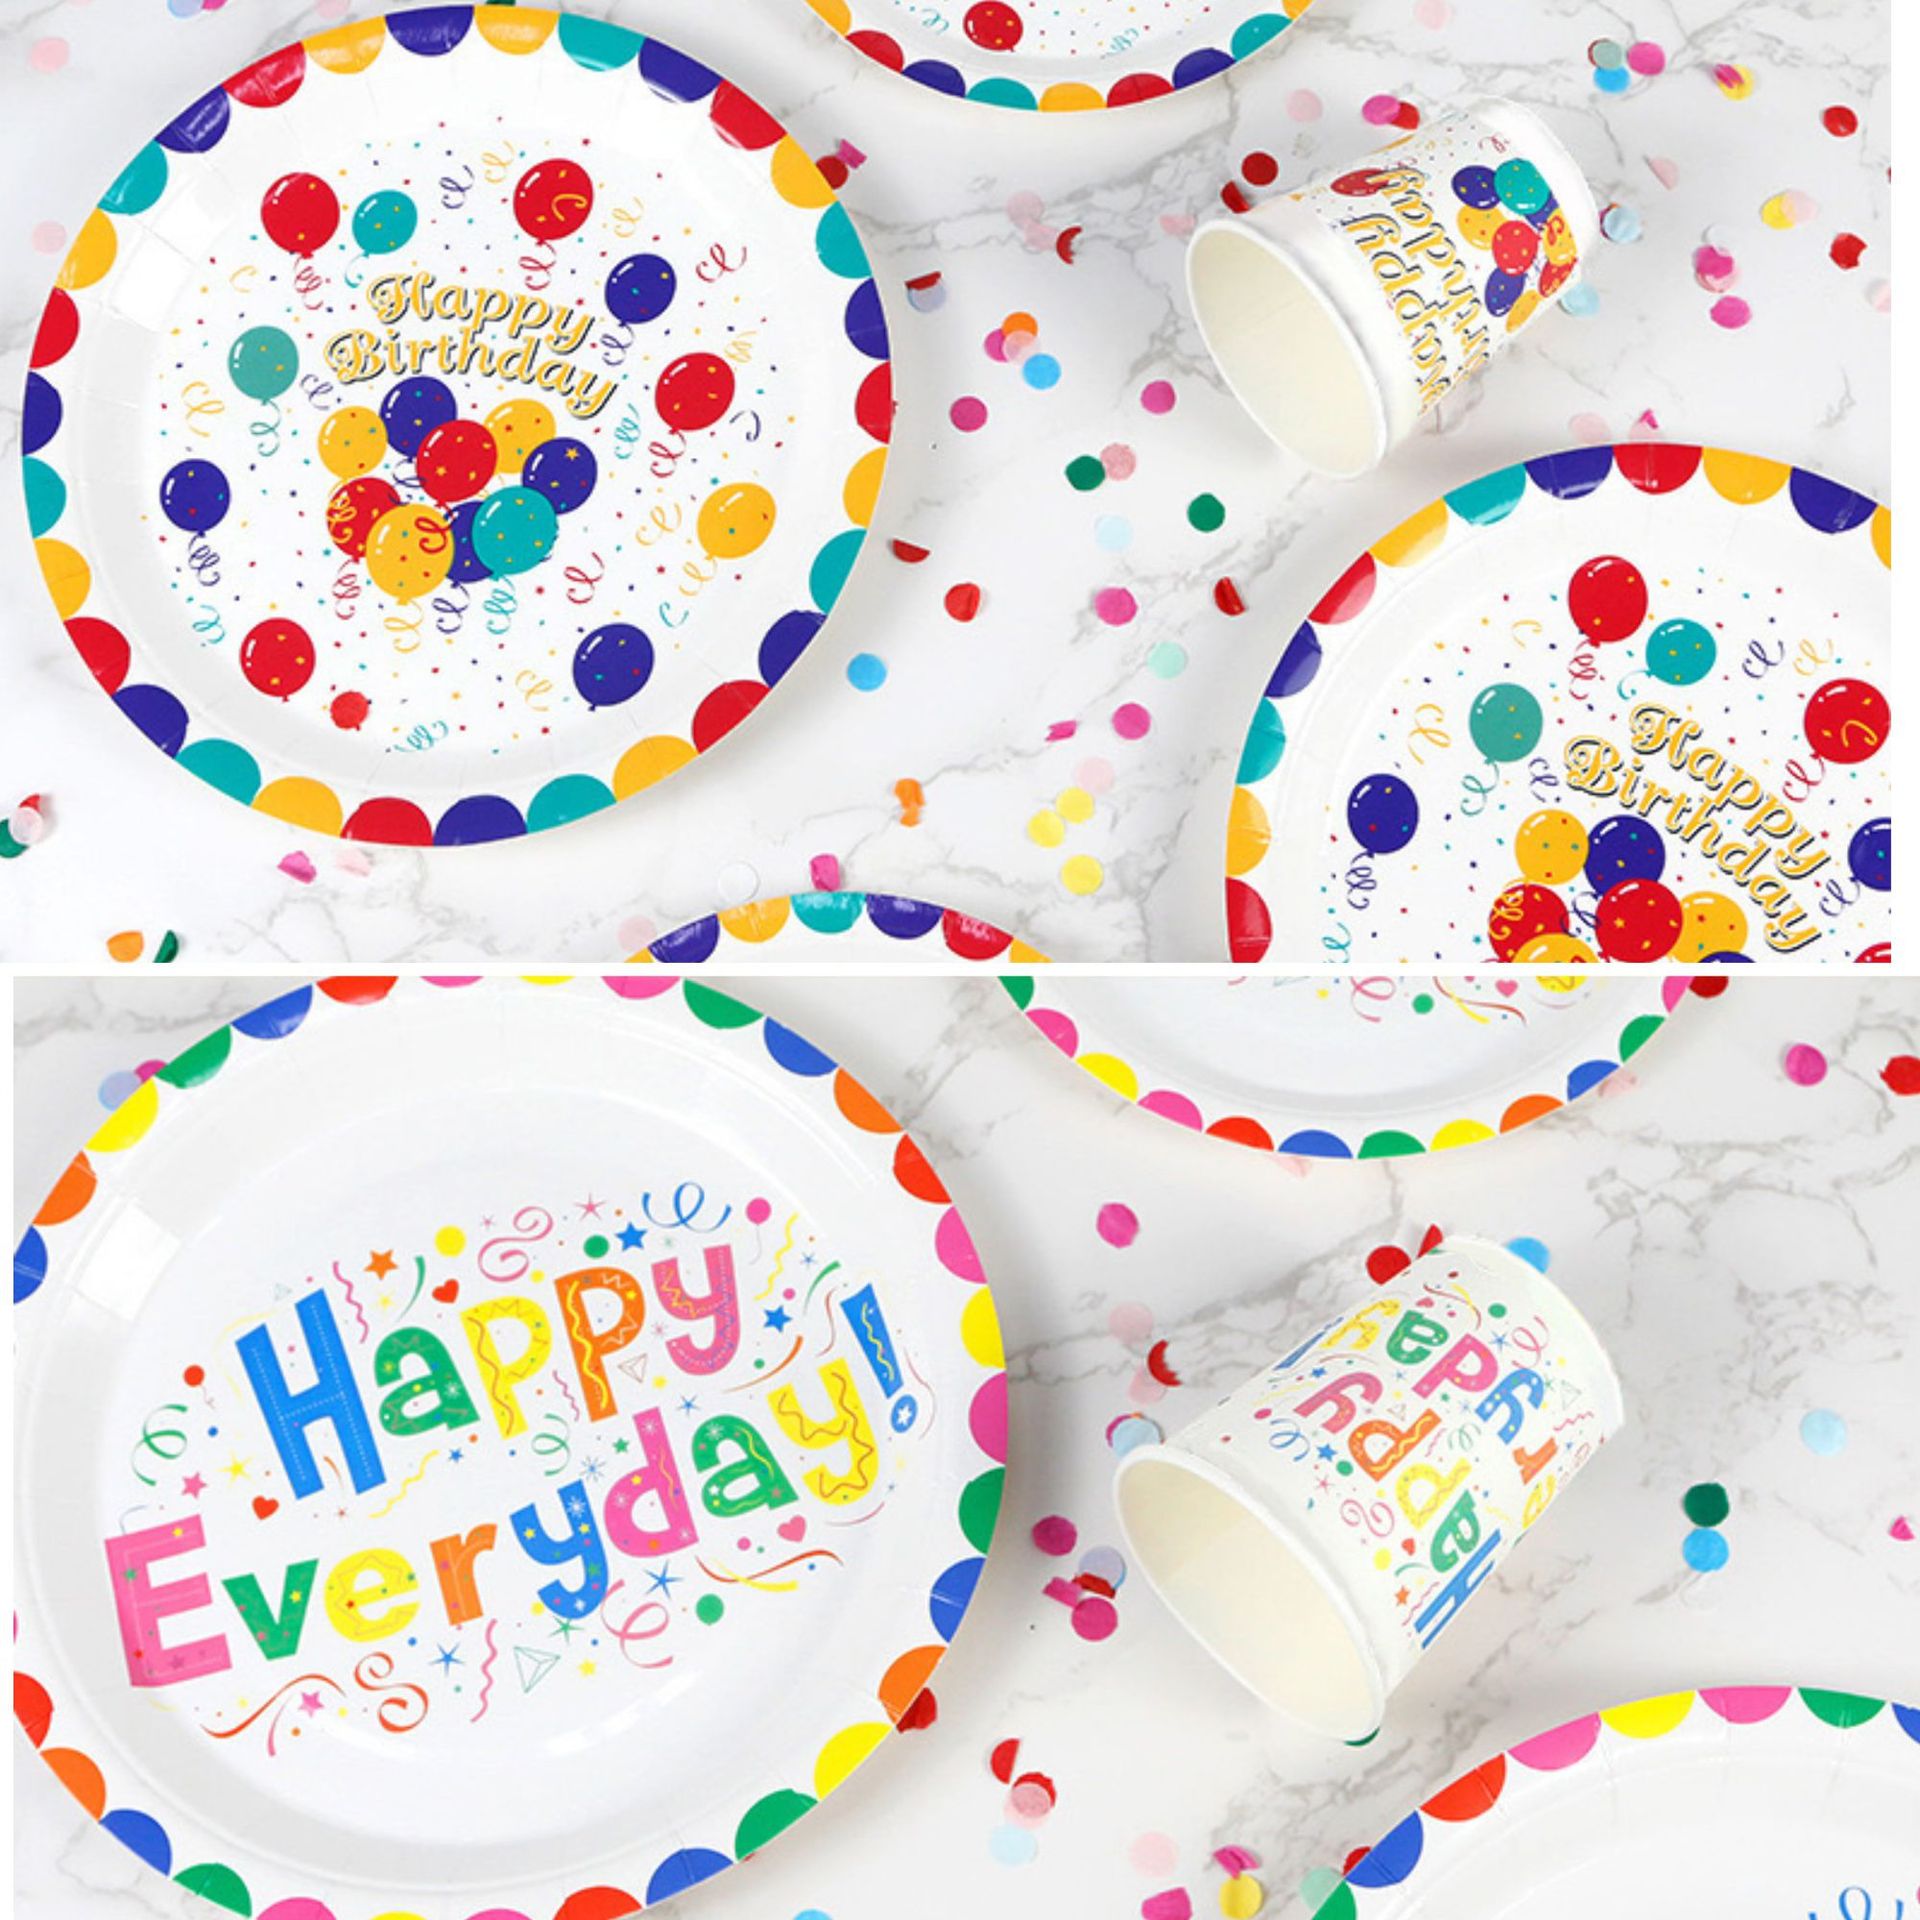 彩色印刷气球纸杯纸盘套装欧美生日派对一次性聚会生日用品套装